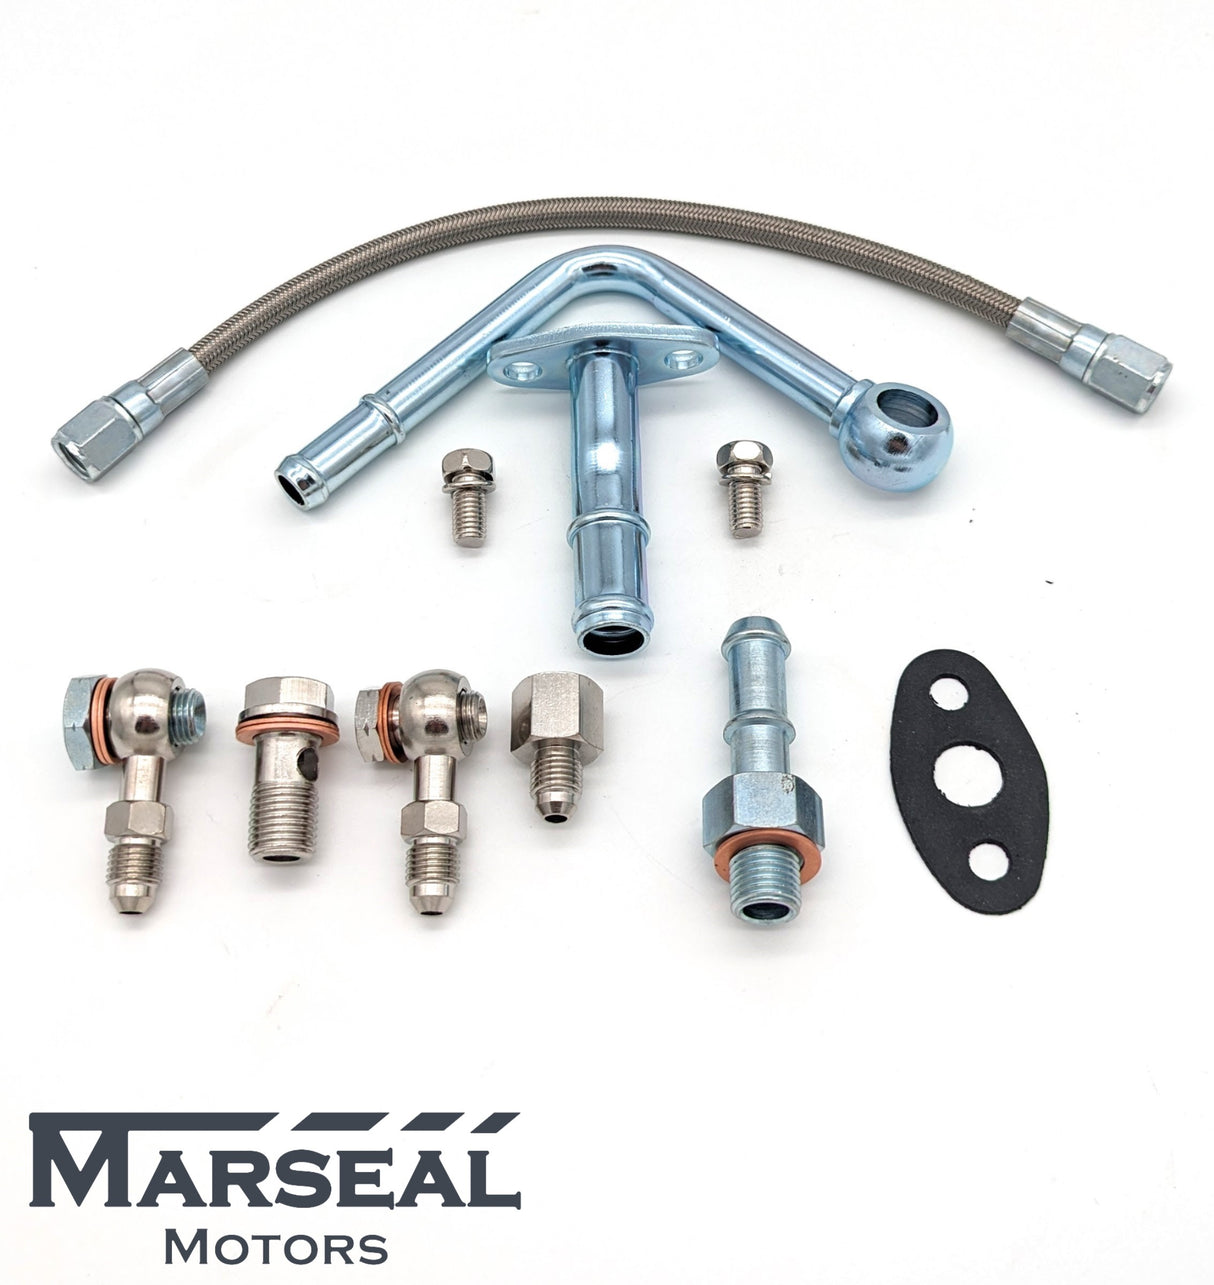 Marseal Motors - Subaru Turbo Fitting Kit